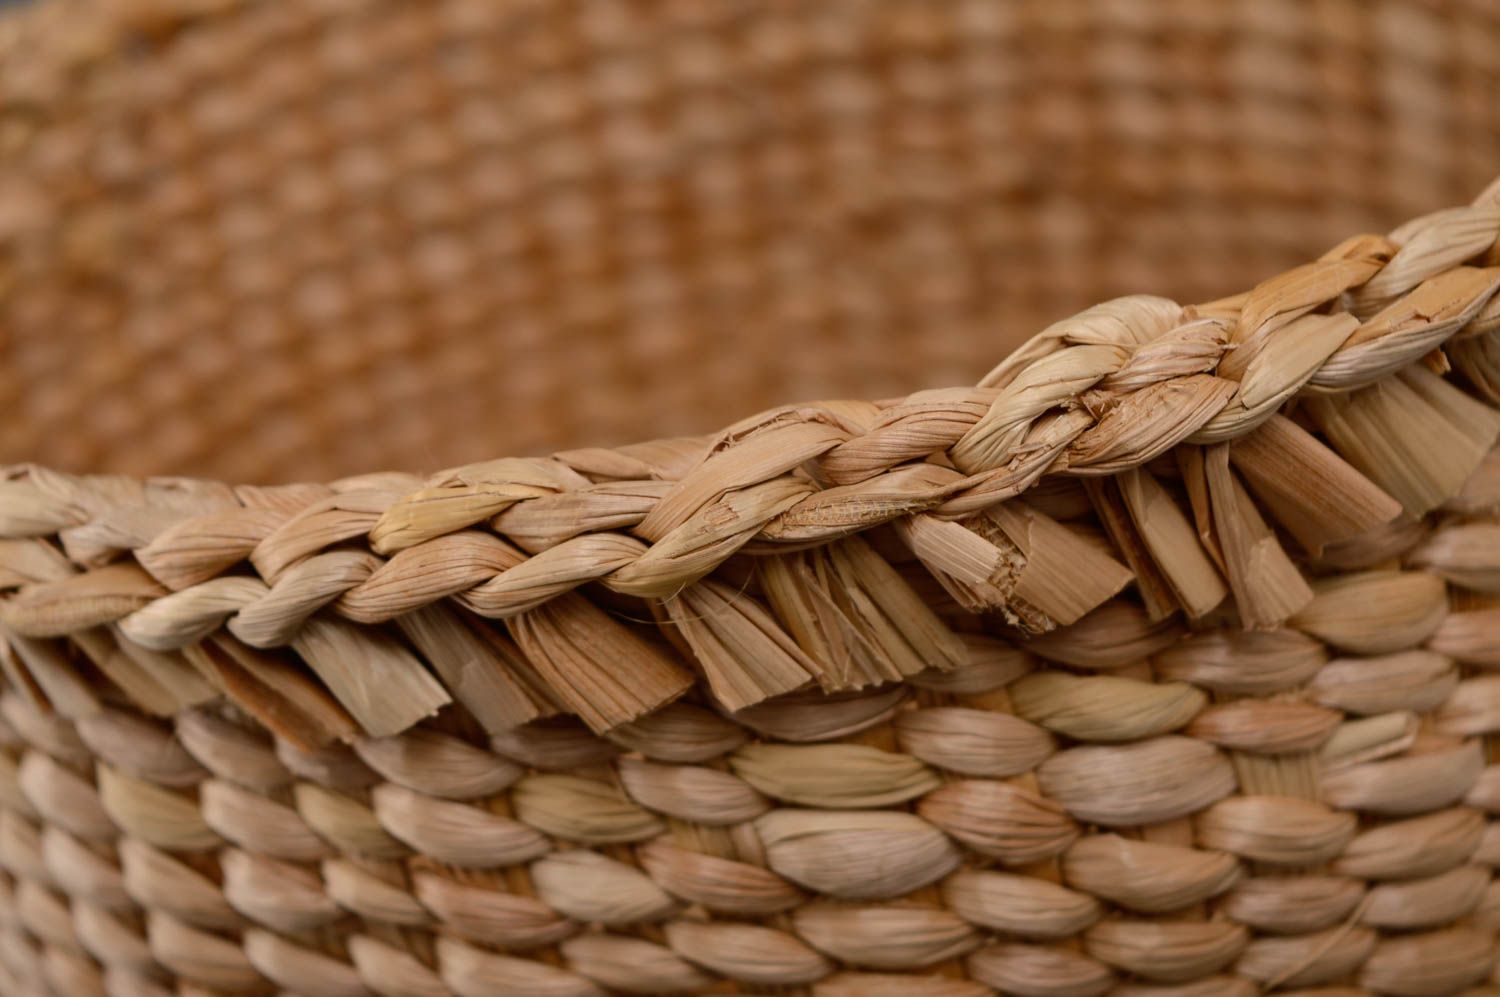 Round reedmace basket purse photo 2